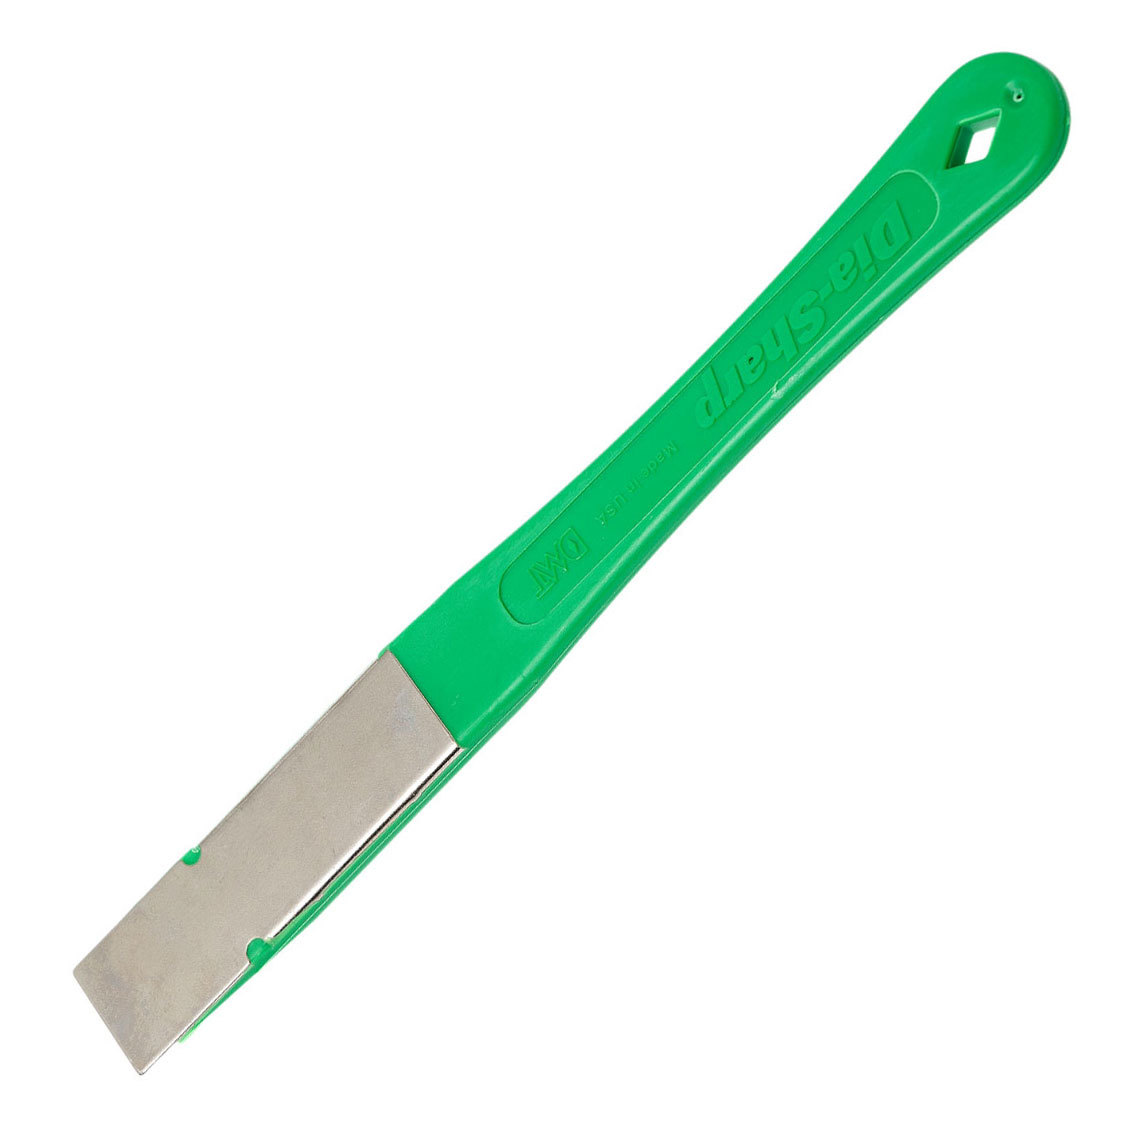 Алмазная точилка для ножей DMT® Extra-Fine, 1200 mesh, 9 micron, Все для заточки ножей, Бруски и камни для заточки